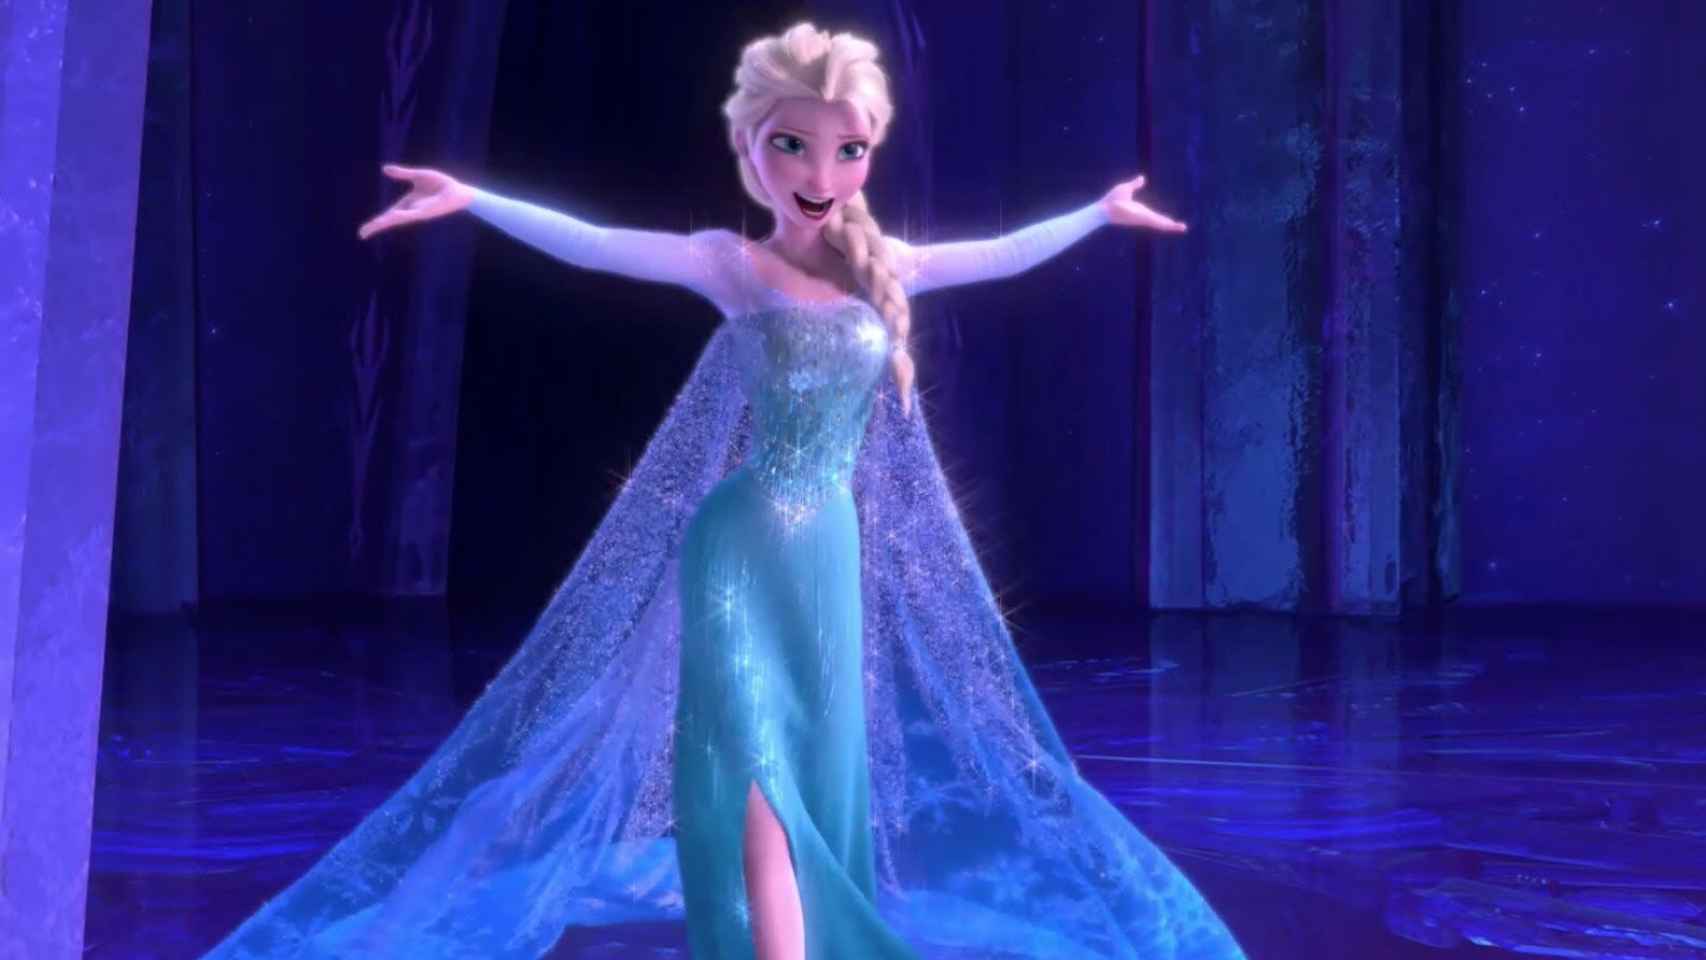 Error garrafal de Telecinco: corta 'Frozen' en medio de 'Let it go' para ir a publicidad